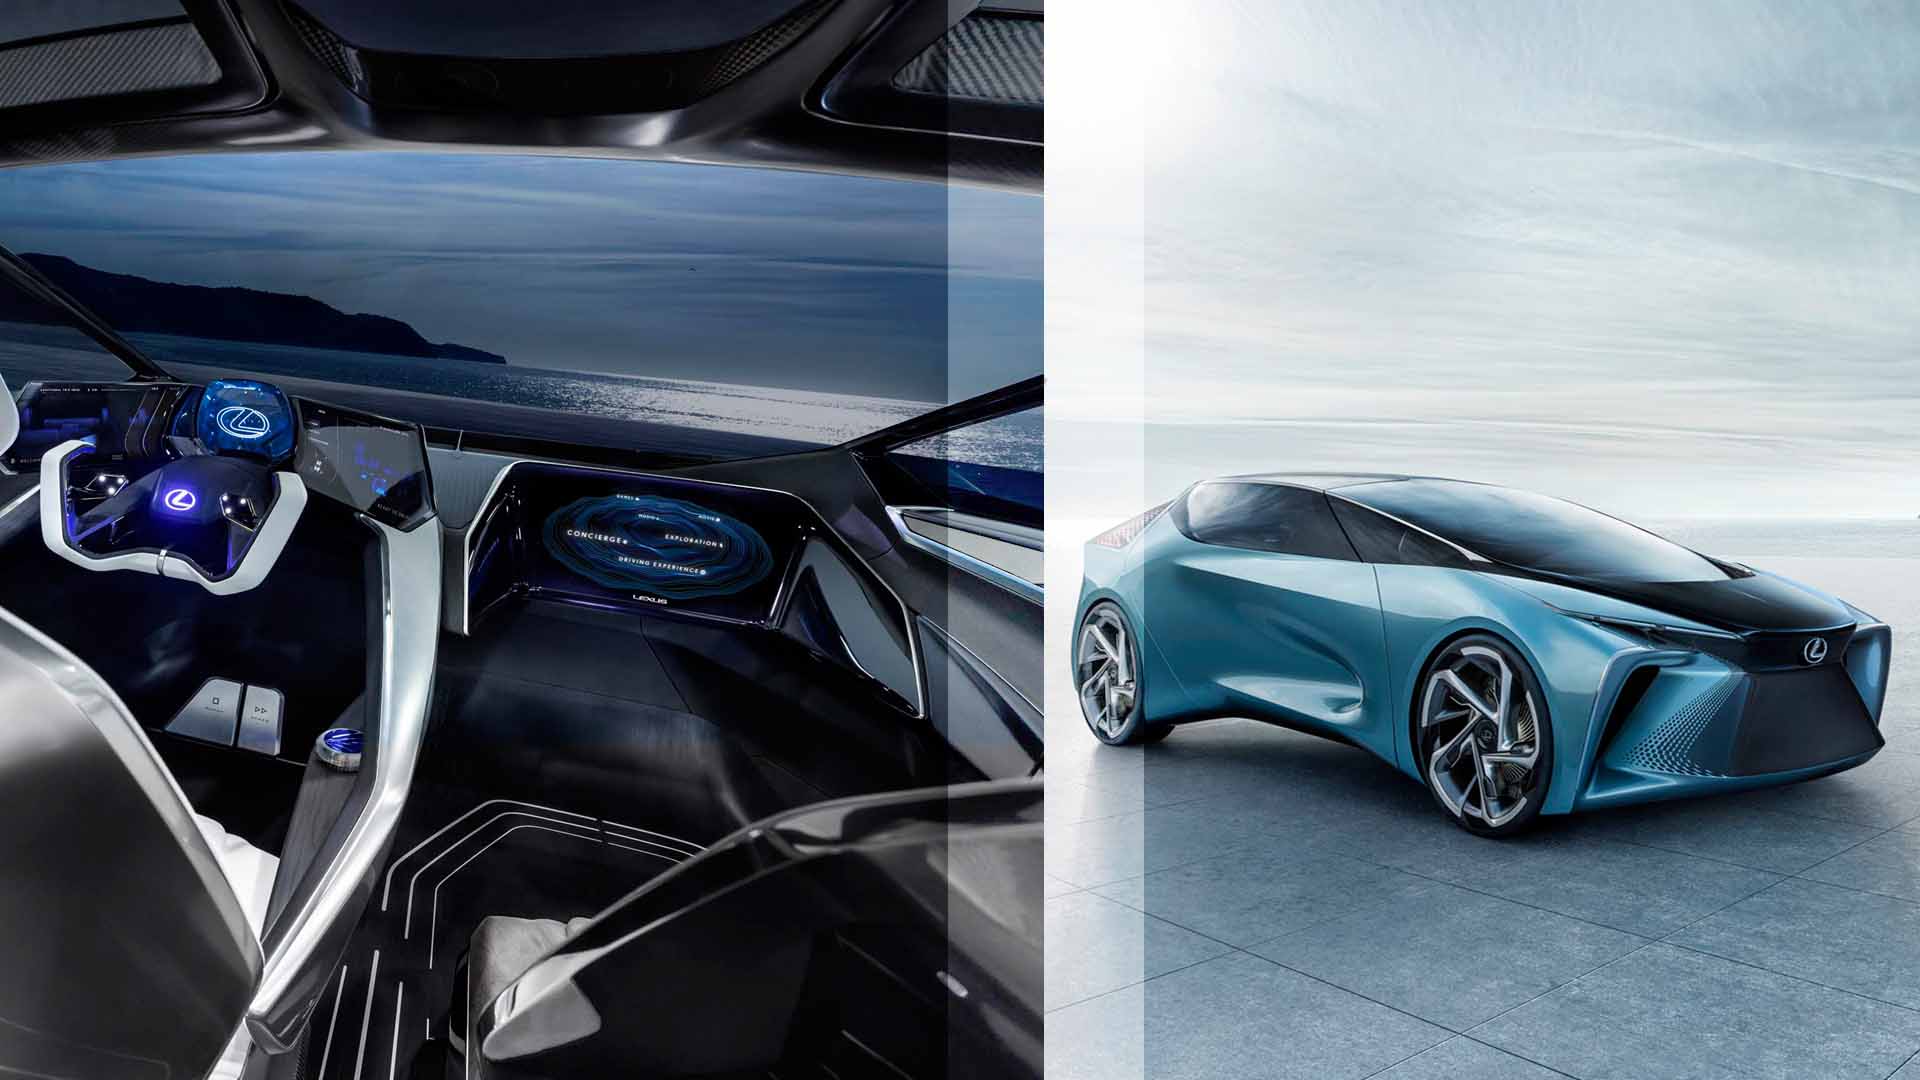 Lexus Otomobil Firması Yeni Teknolojiler Geliştiriyor / Otomobil Dünyasında Yenilik